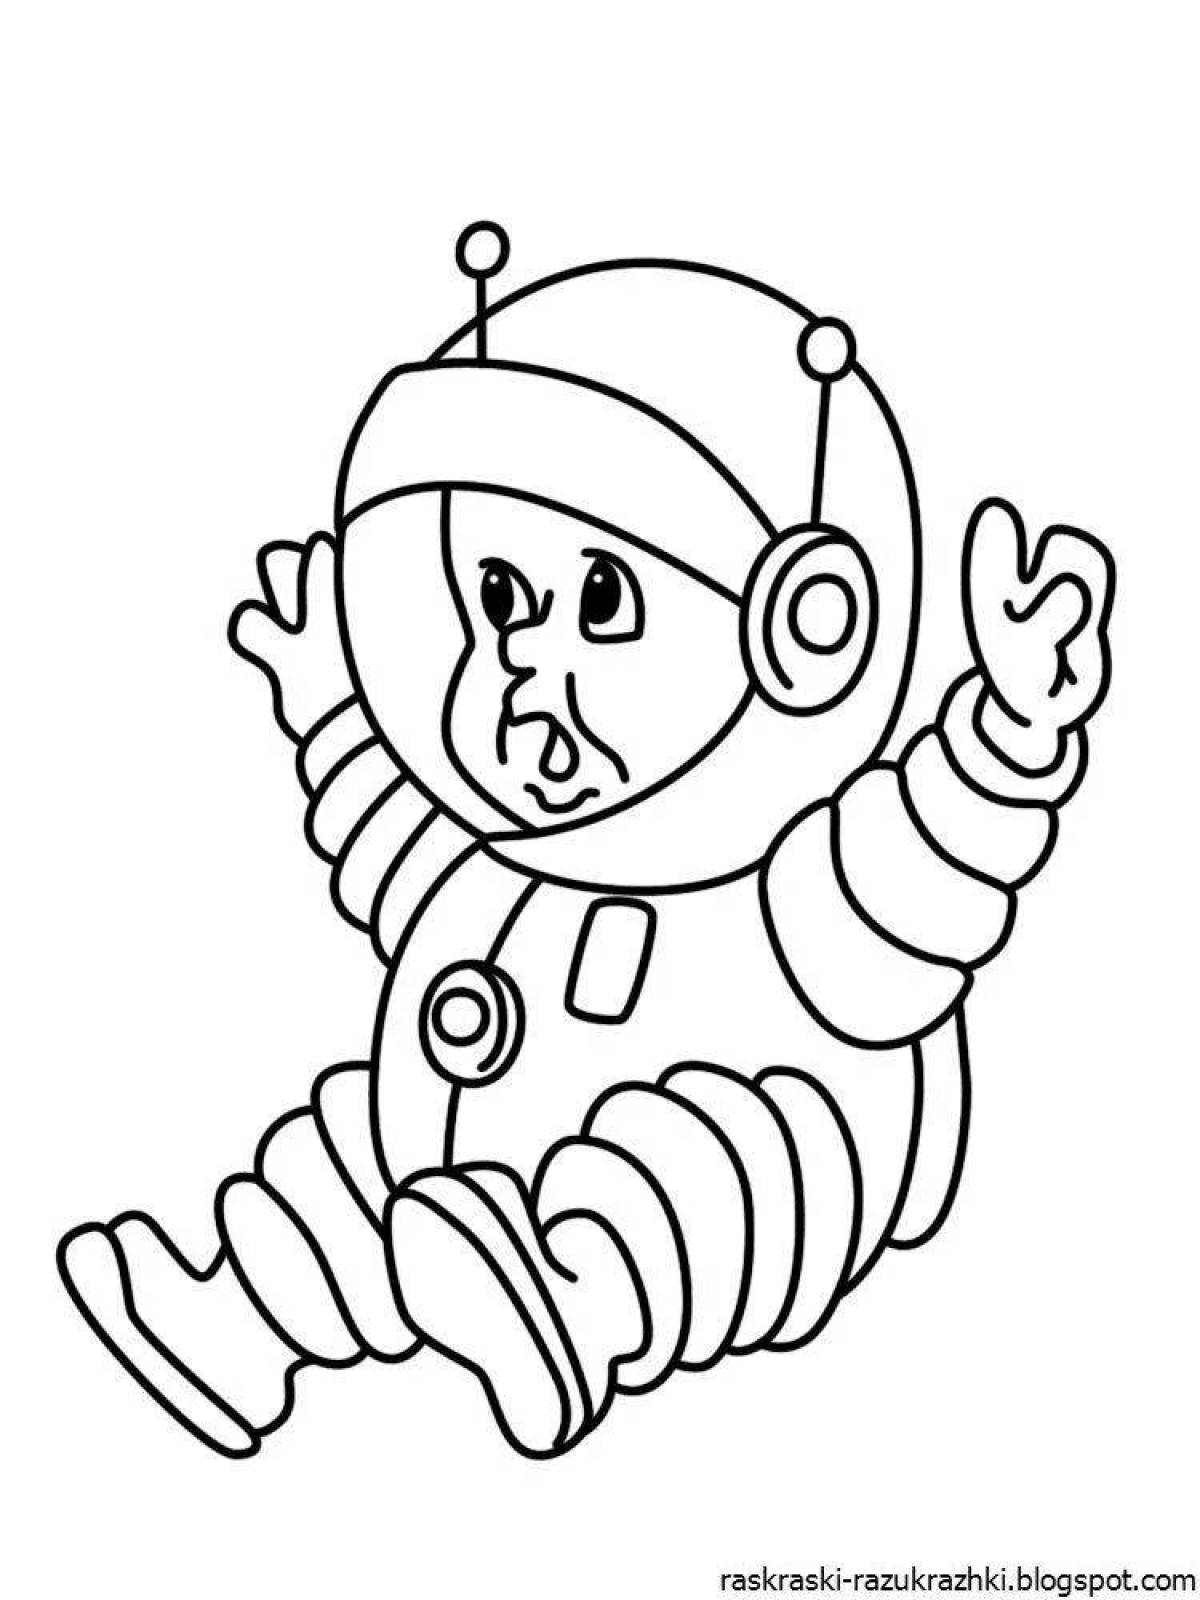 Удивительная раскраска космонавта для детей